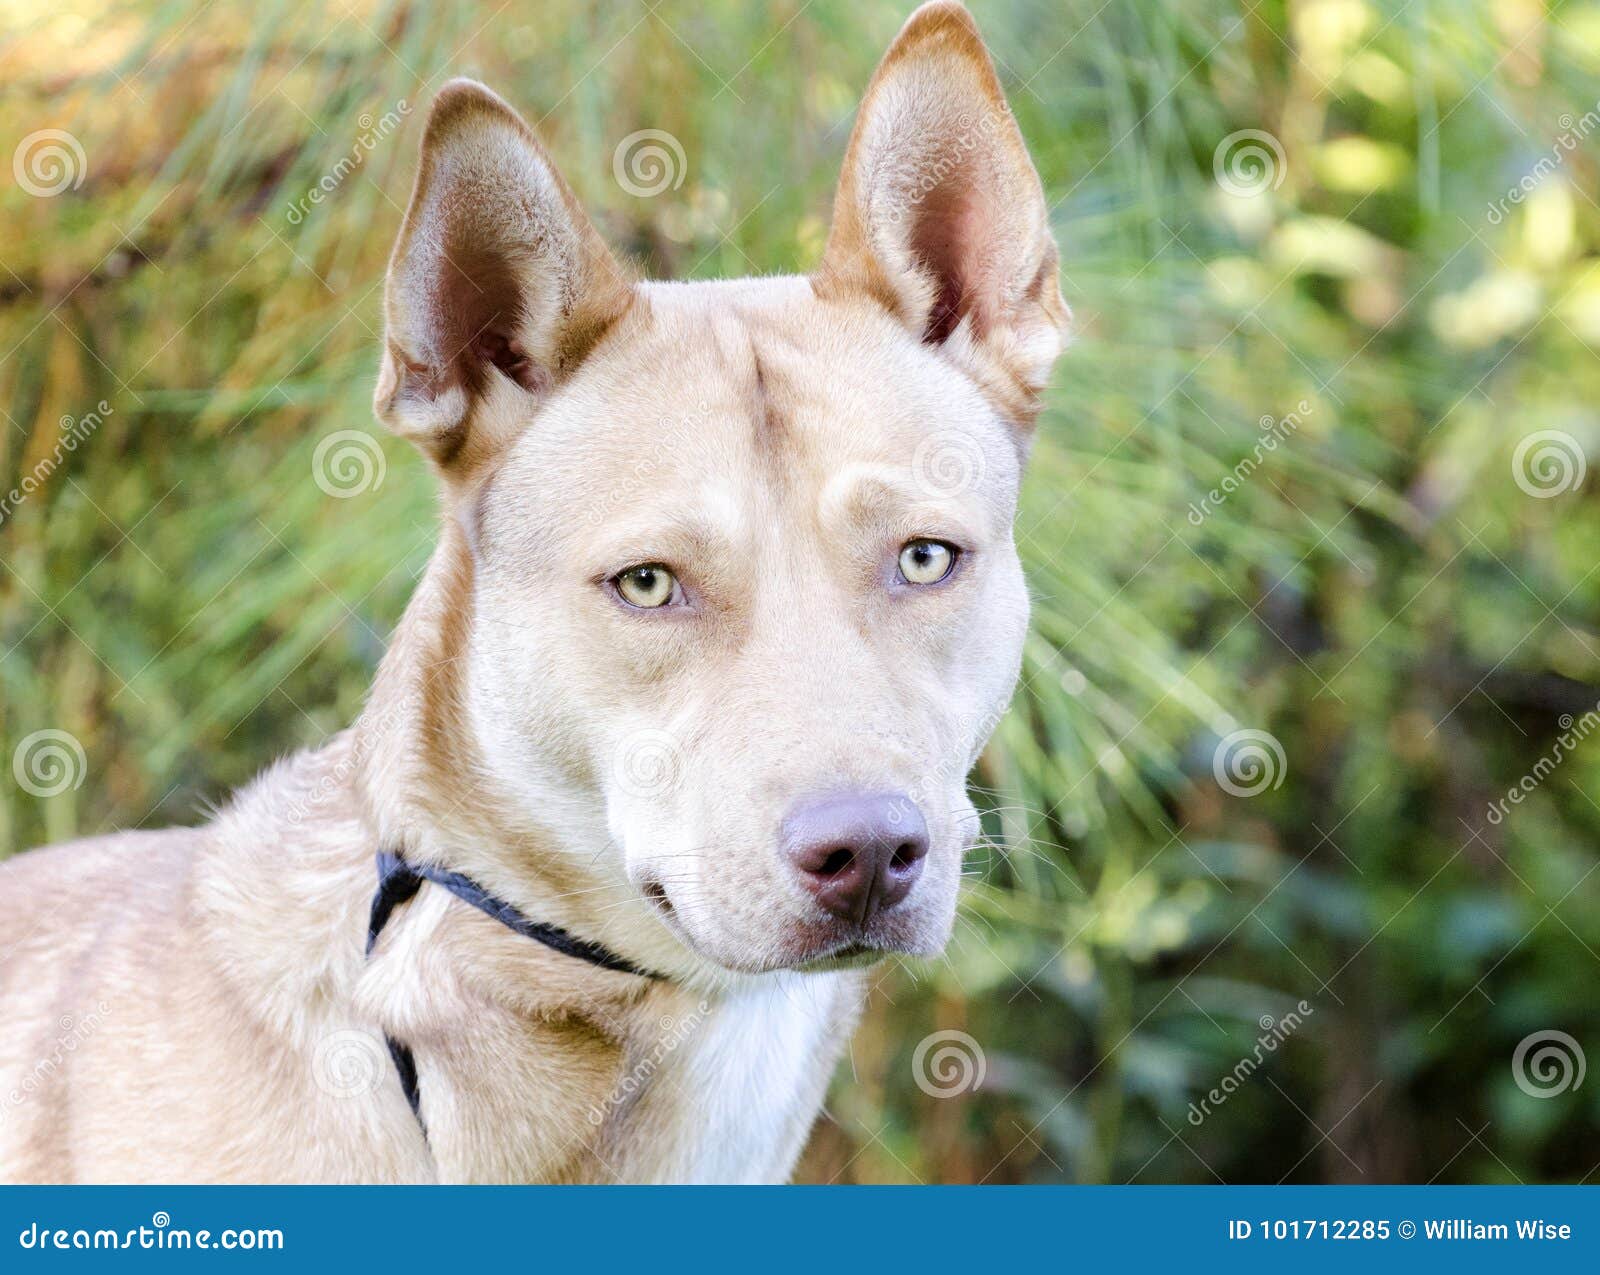 Pharaoh Hound Siberian Husky Mixed Breed Dog Stock Image Image Of Tail Pharaoh 101712285